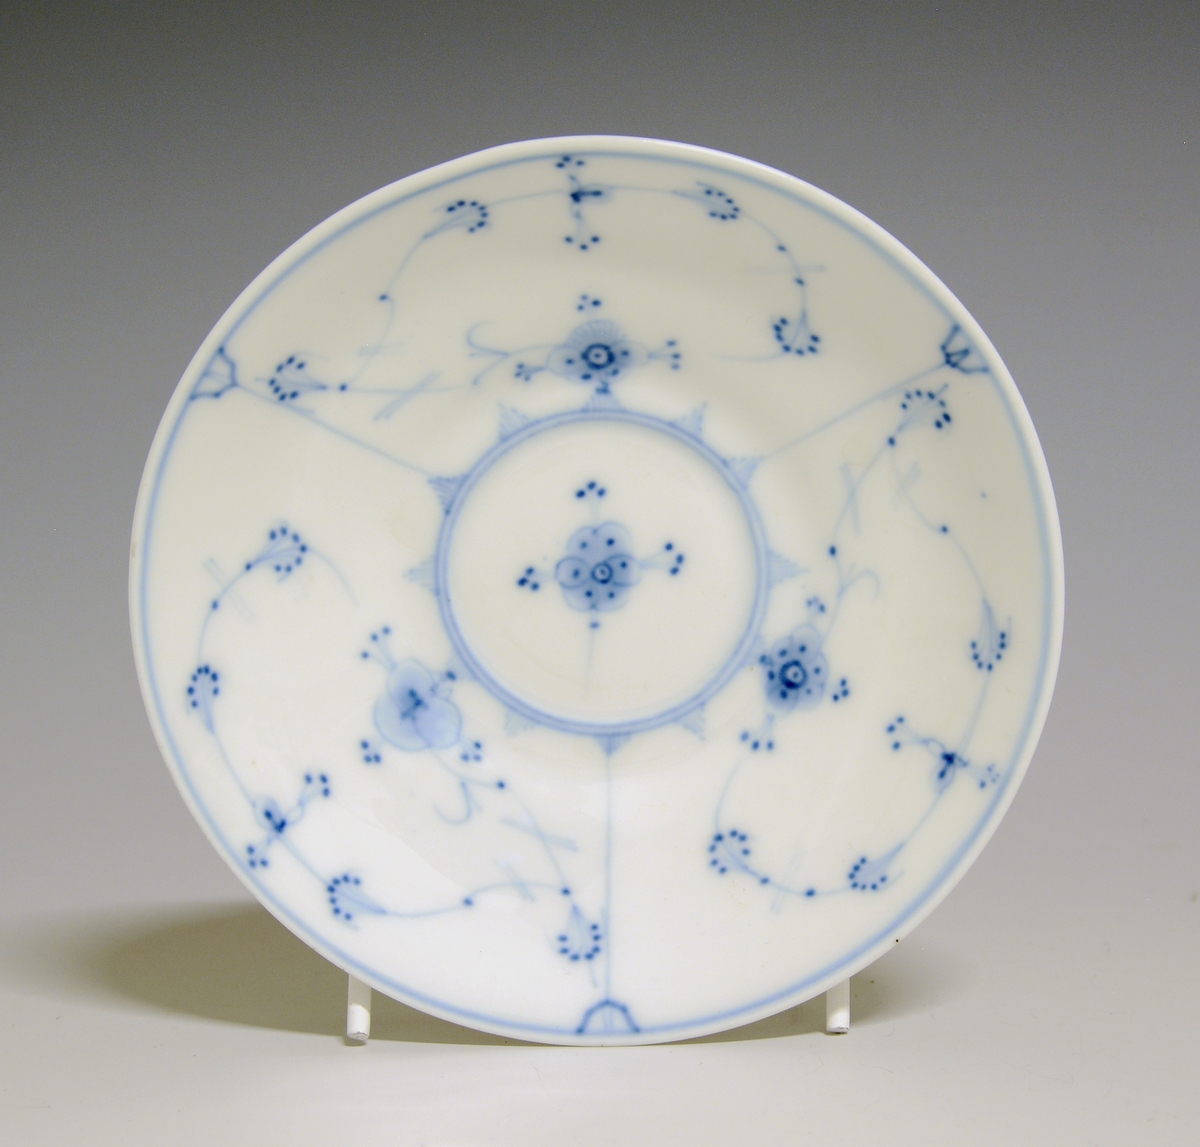 Kaffeskål av porselen med hvit glasur. Dekorert med stråmønster i blått.

Modellnr: 314.3, tilhører kaffe- og theservice 901.
Finnes i priskuranten for 1900 og 1909
